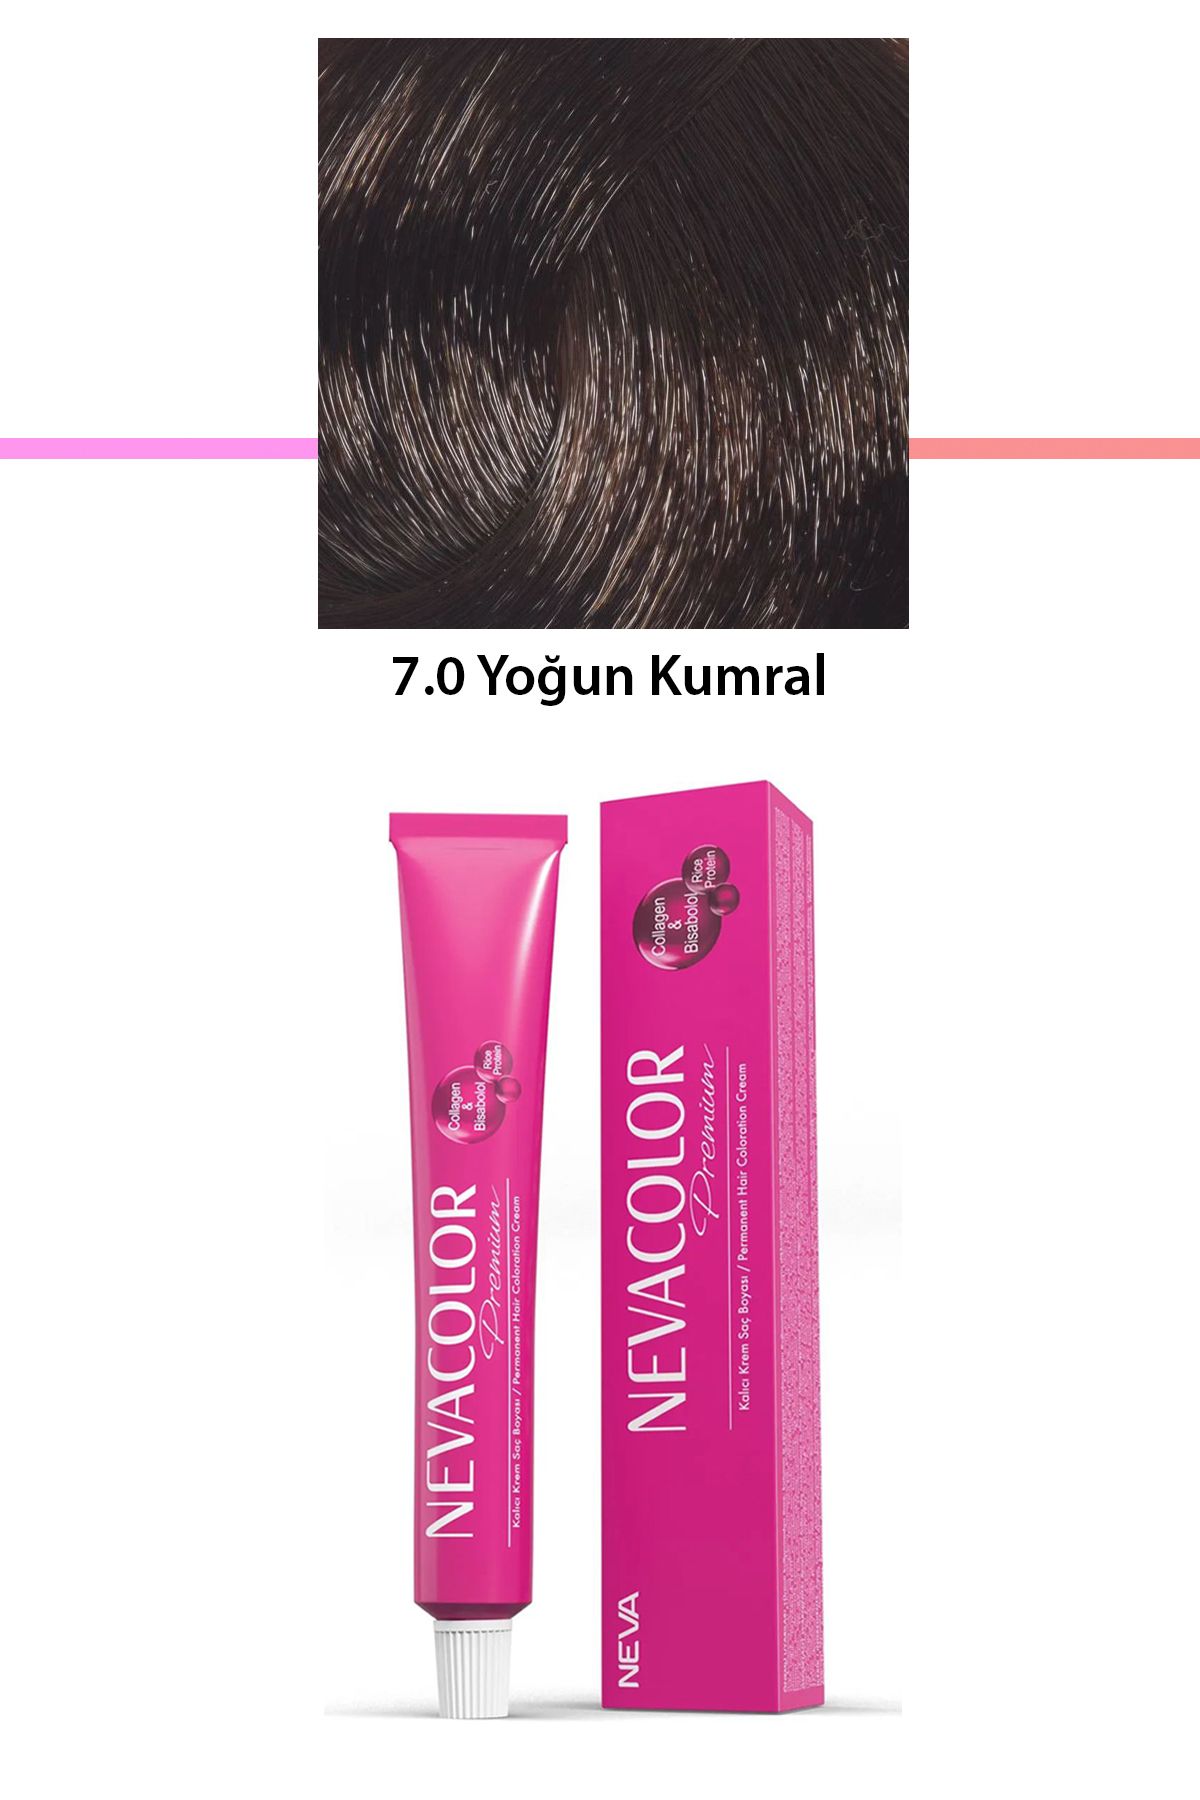 Neva Color Premium 7.0 Yoğun Kumral - Kalıcı Krem Saç Boyası 50 g Tüp